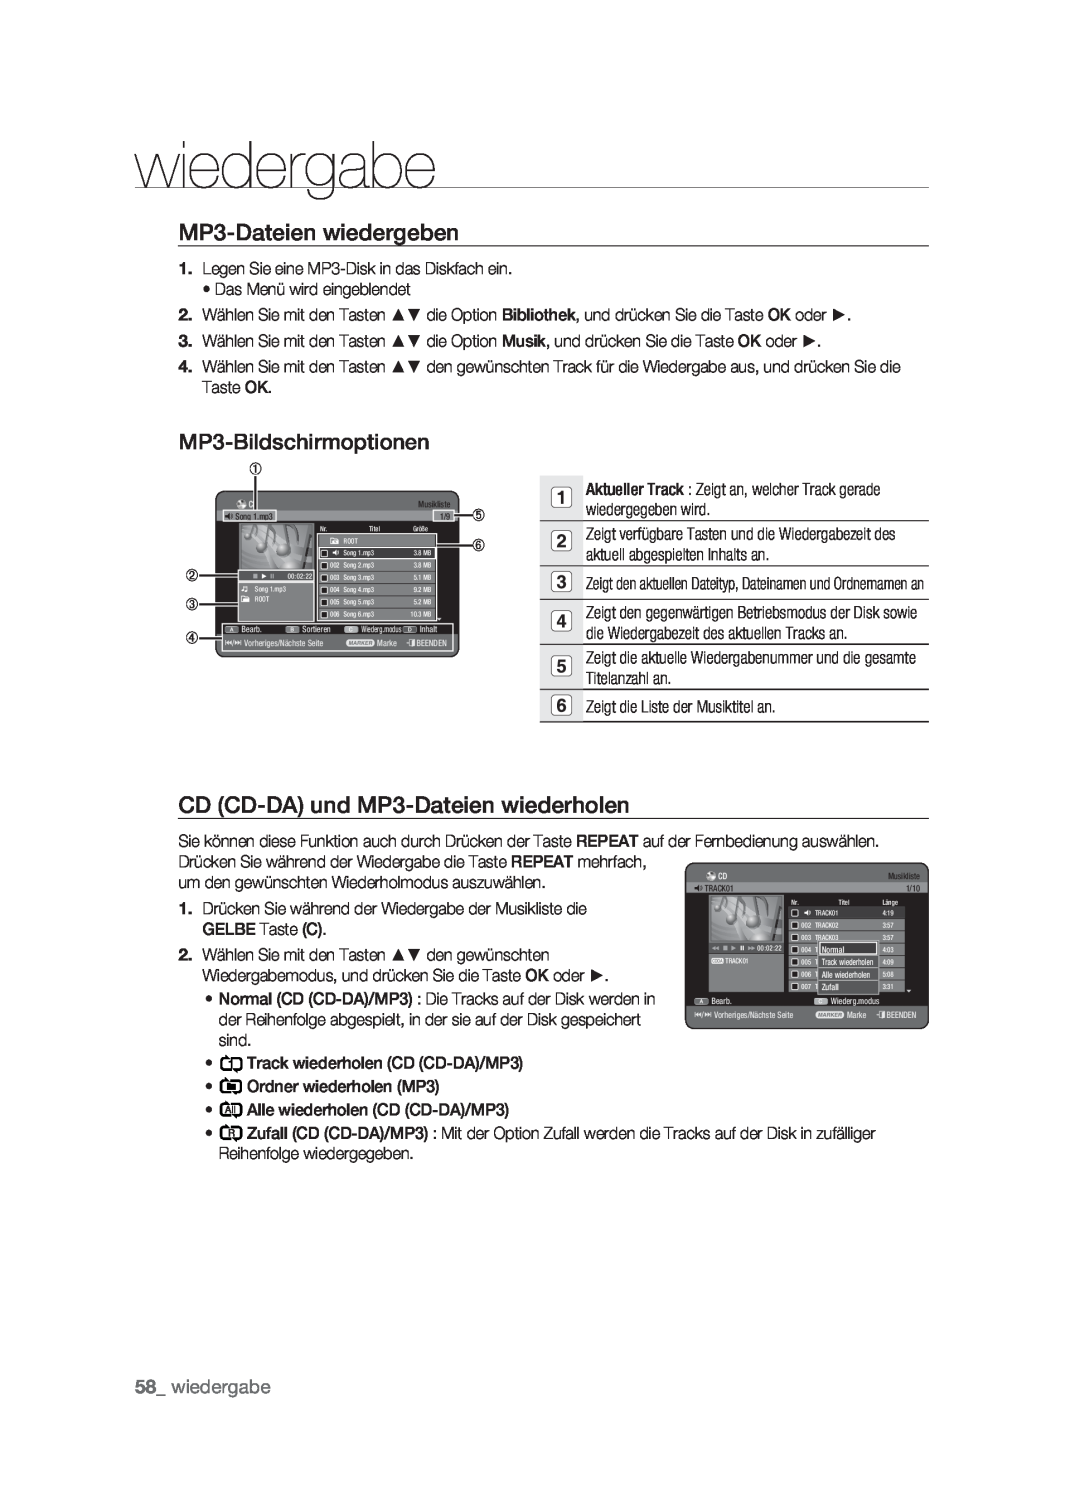 Samsung DVD-HR773/XEG MP3-Dateien wiedergeben, MP3-Bildschirmoptionen, CD CD-DA und MP3-Dateien wiederholen, wiedergabe 